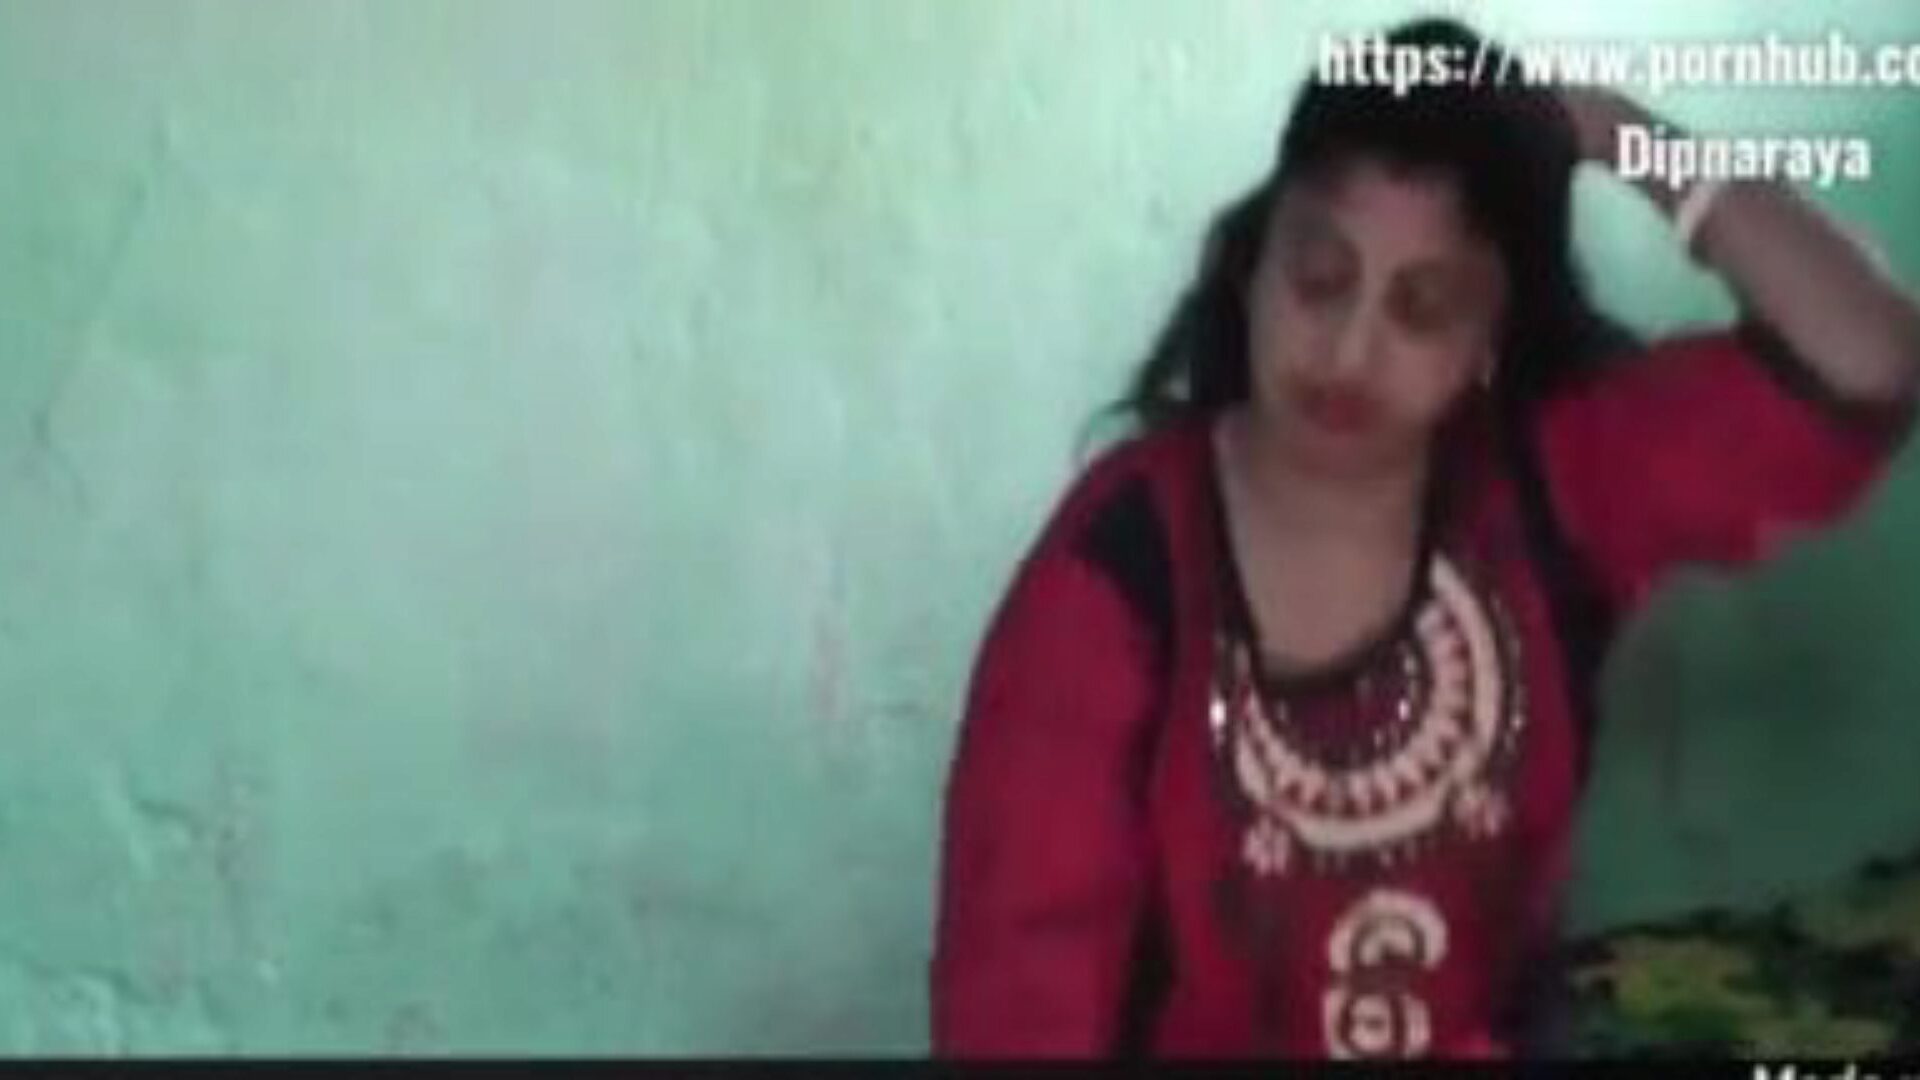 σέξι ζευγάρι ινδικού χωριού σε σπιτικό βίντεο σεξ: πορνό c8 παρακολουθήστε σέξι ζευγάρι ινδικού χωριού σε σπιτικό επεισόδιο βίντεο σεξ στο xhamster - η απόλυτη βάση δεδομένων δωρεάν ασιατικών xxn σεξ σκληρών πορνό βίντεο πορνό